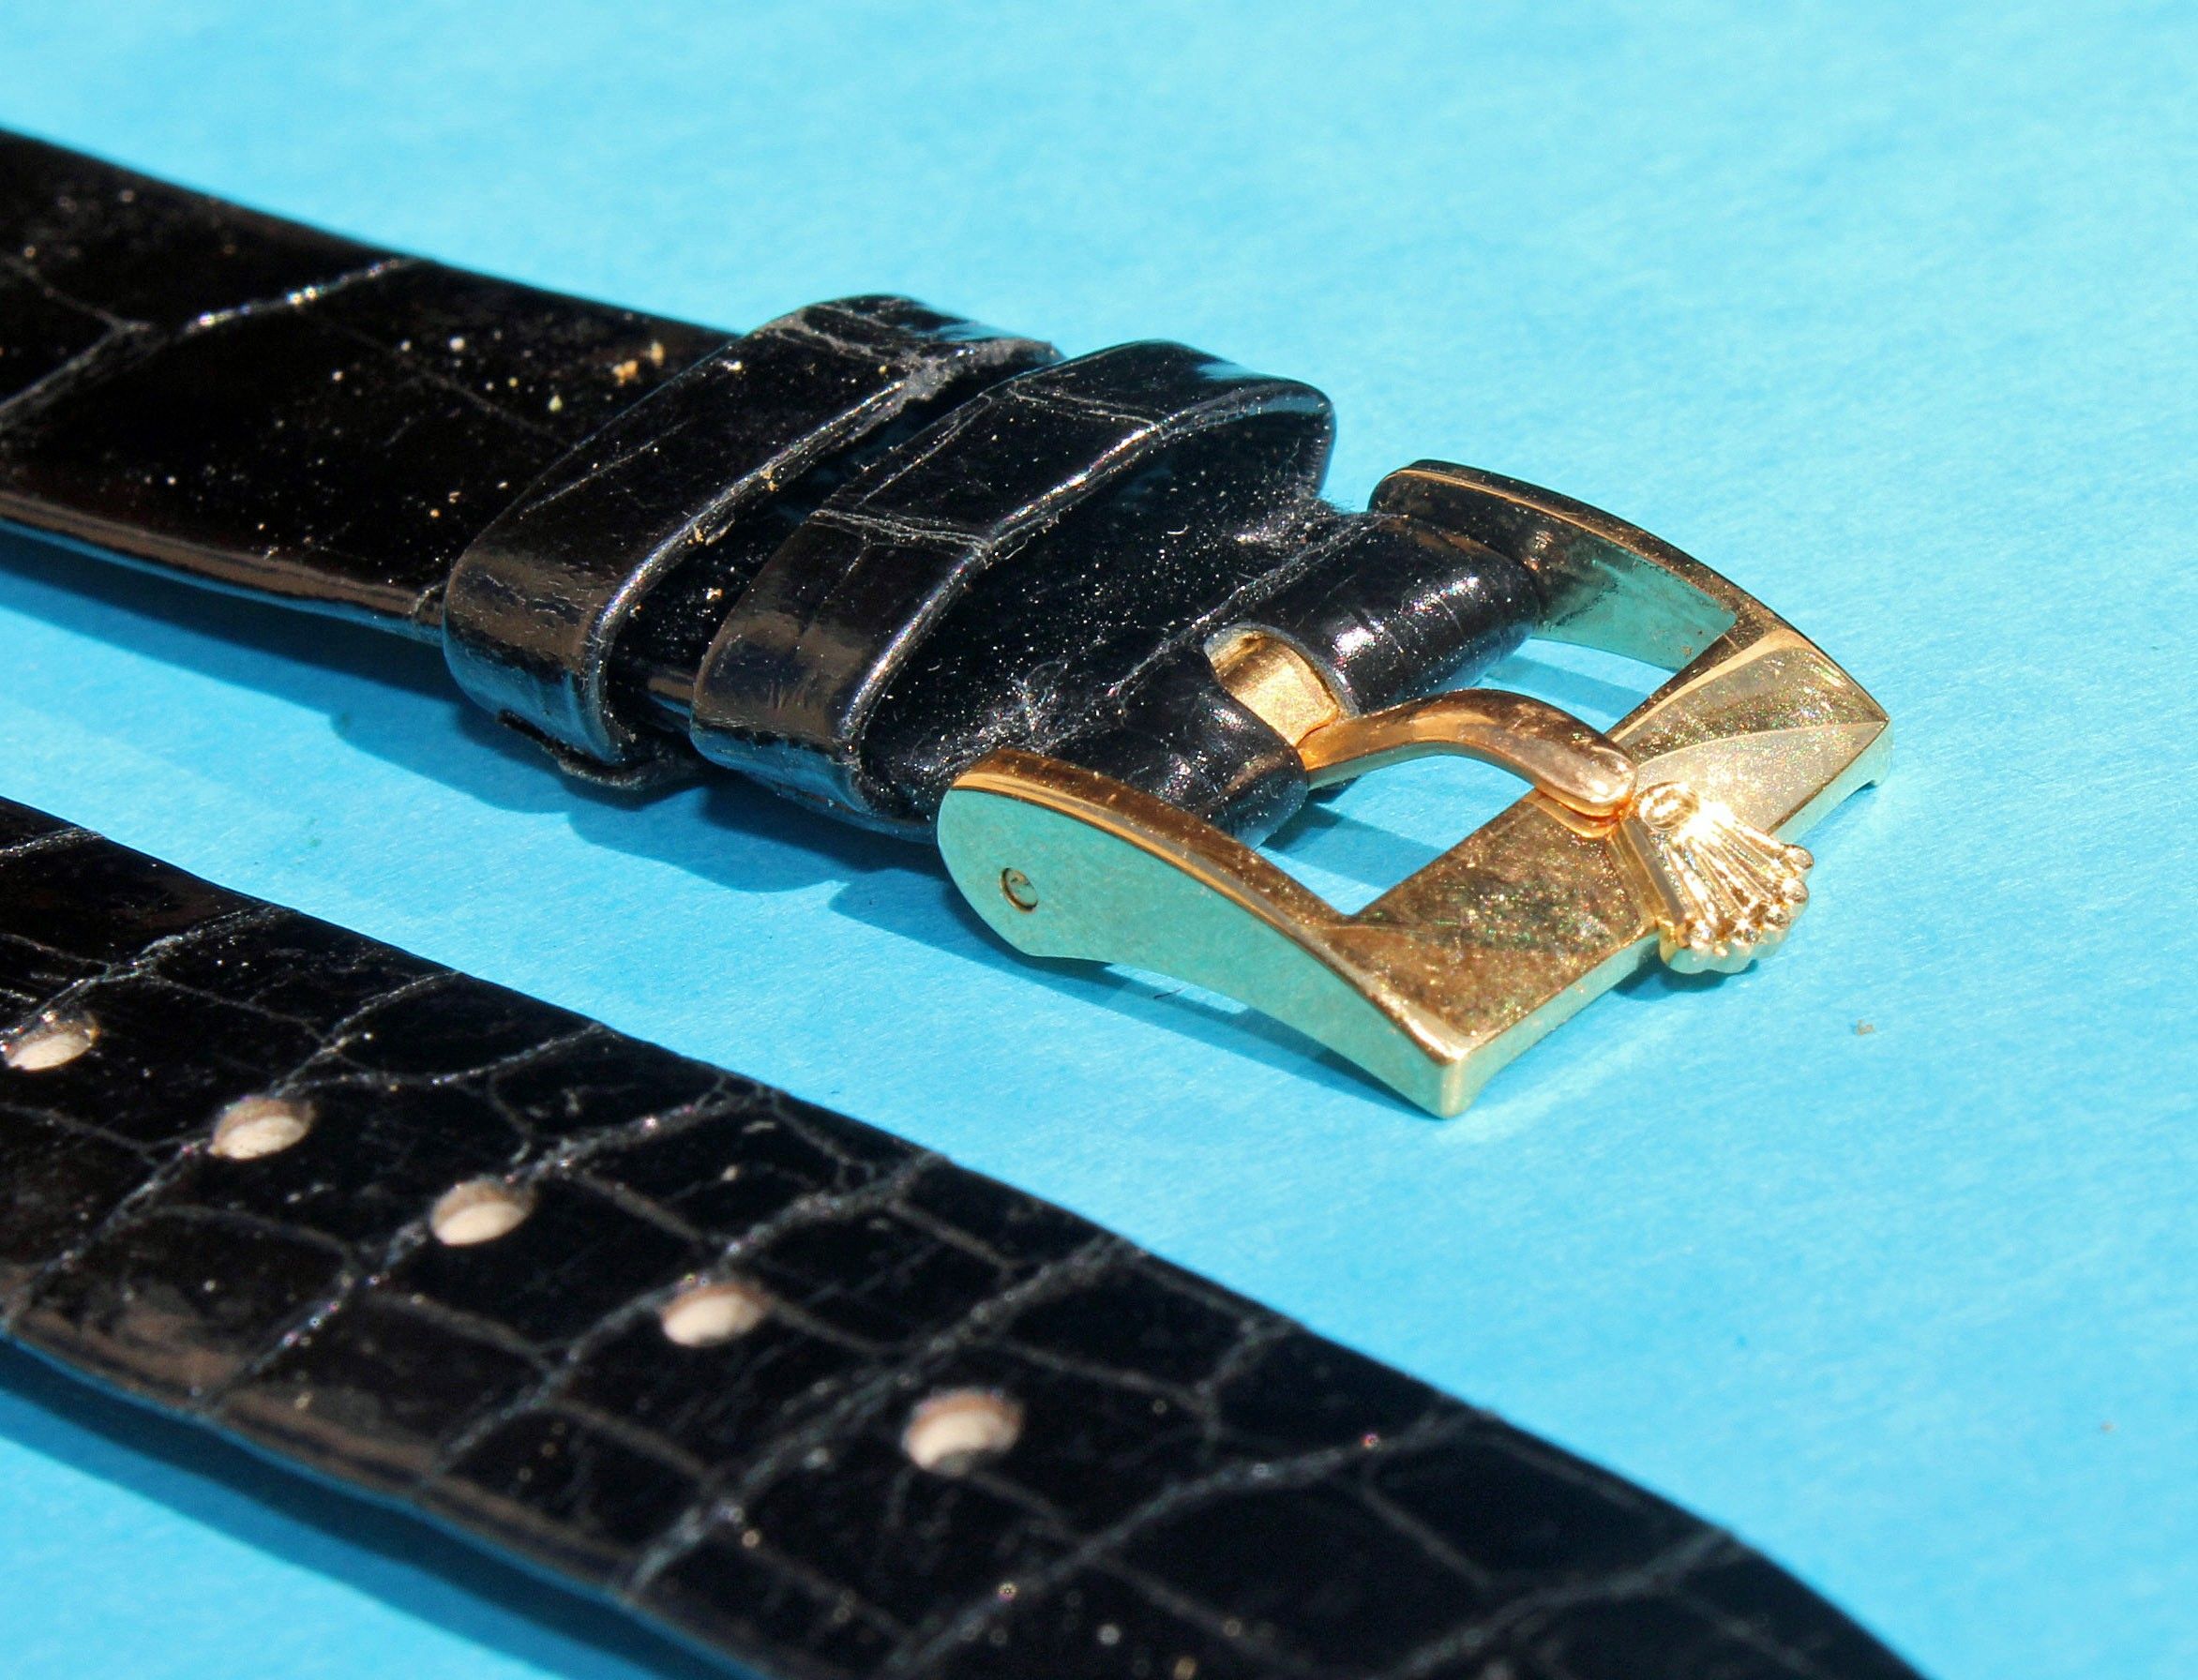 rolex crocodile leather strap